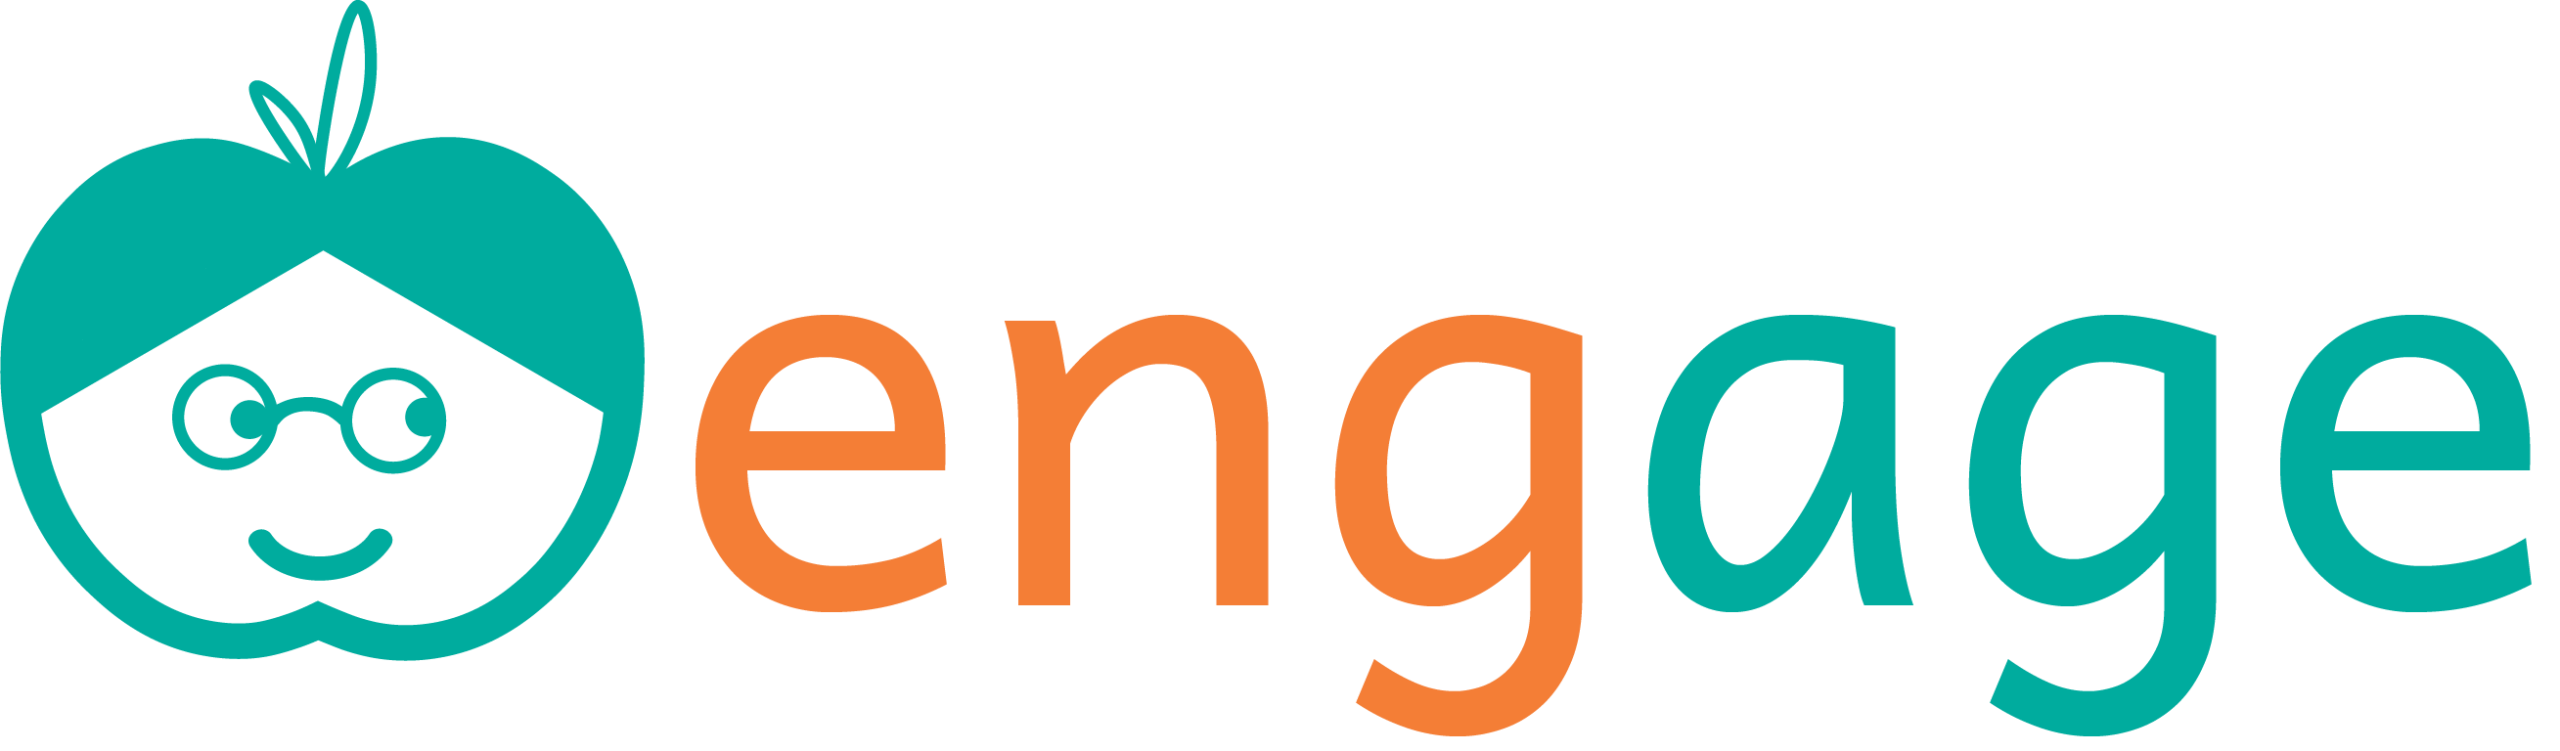 Logo couleurs